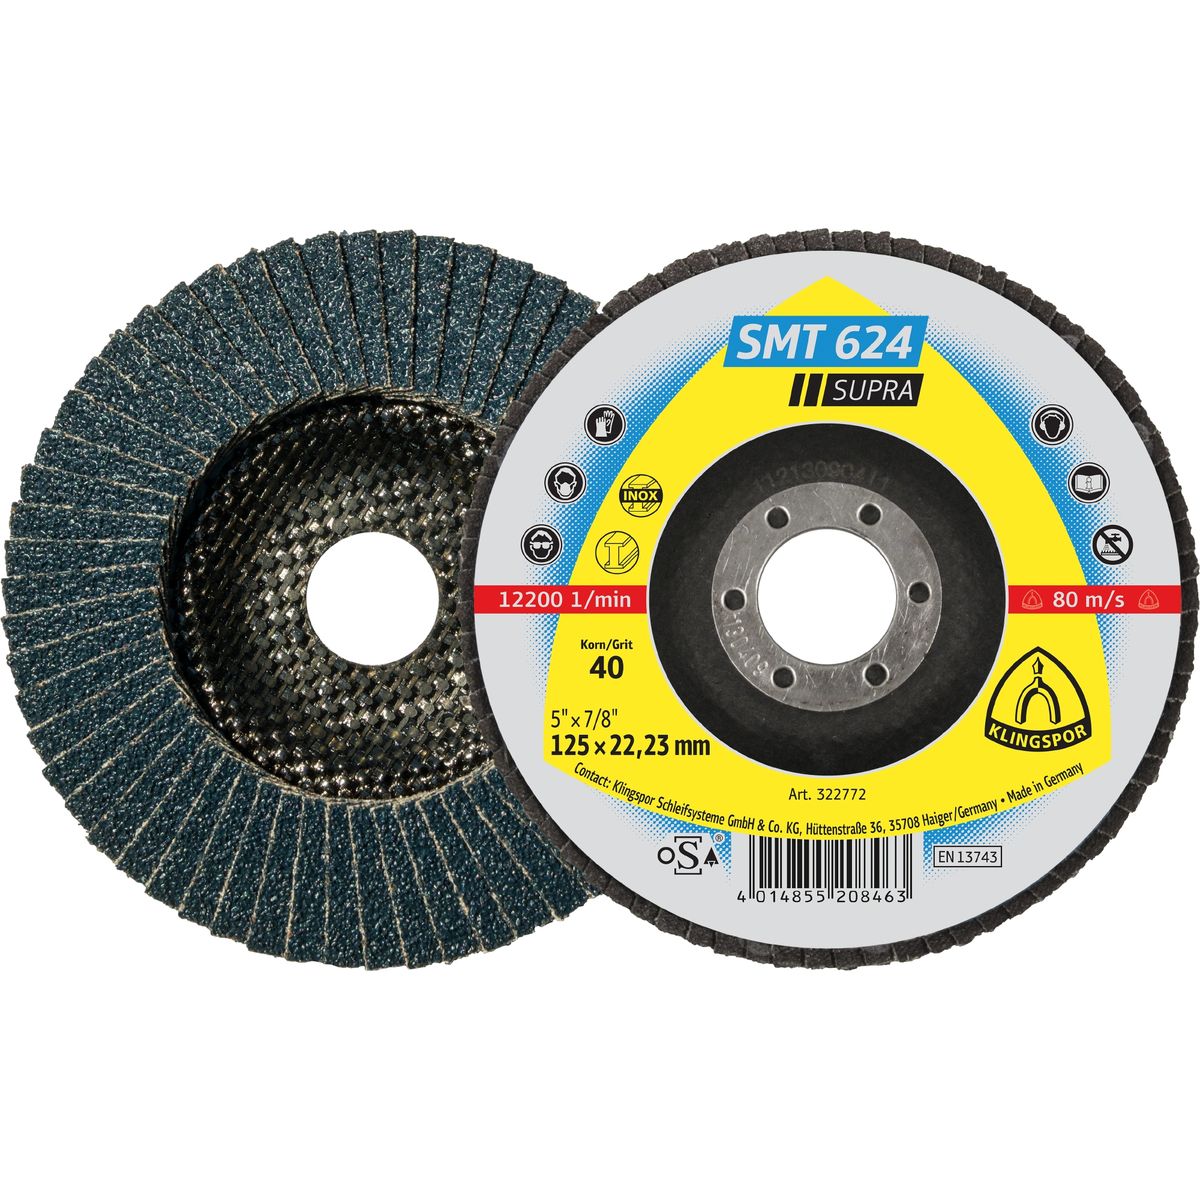 Abrasive mop disc  125X22,23mm, Grit 80 SMT 624 Klingspor